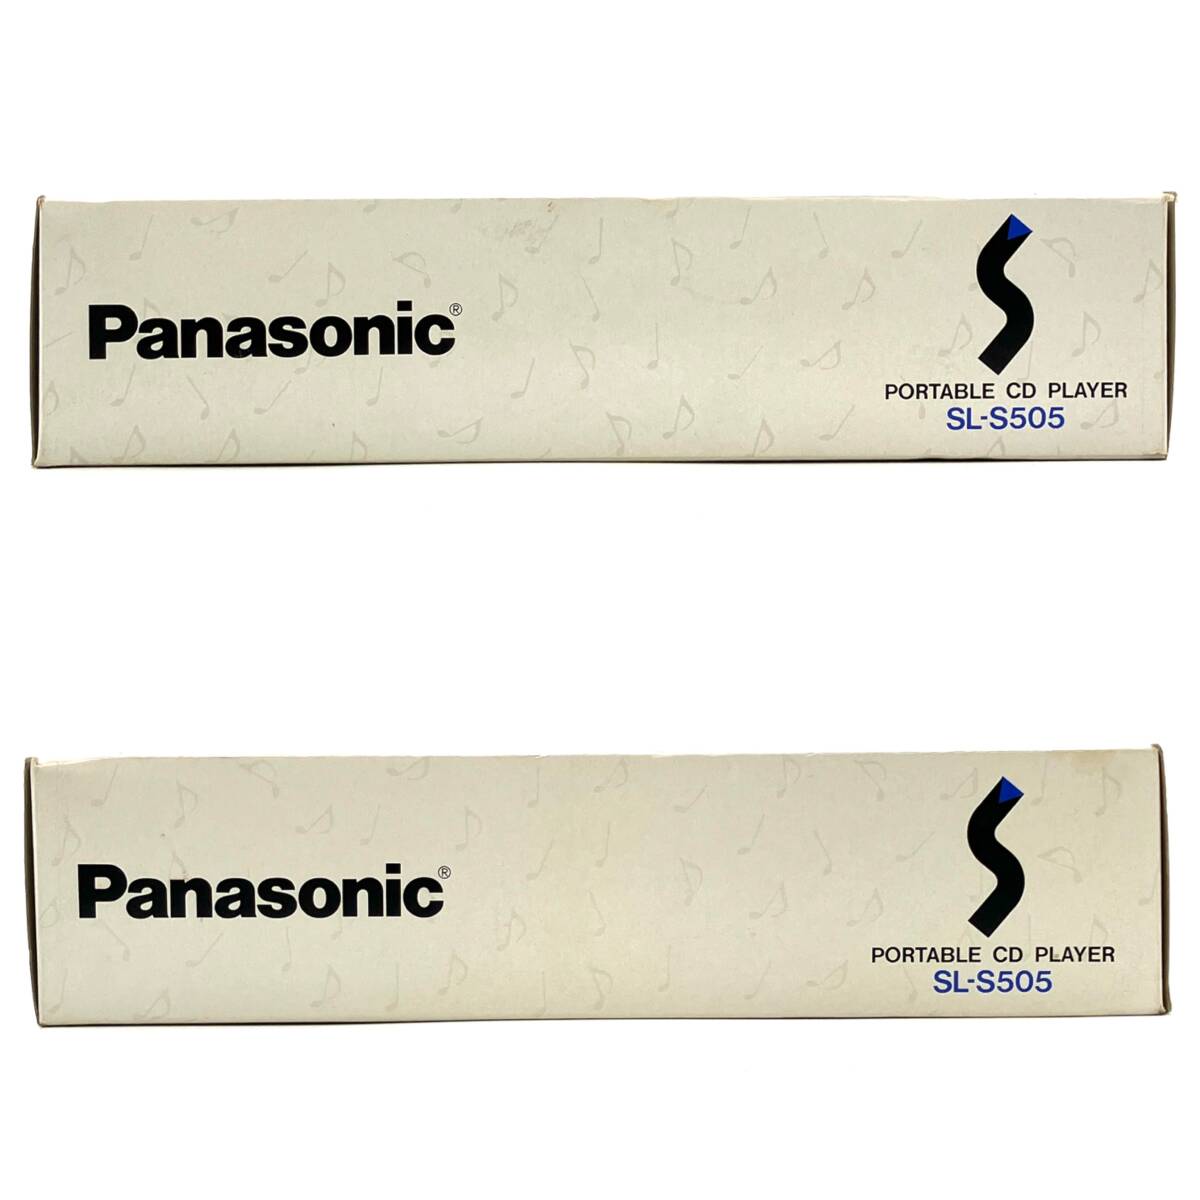  Junk [Panasonic SL-S505 портативный CD плеер с коробкой ] Panasonic звуковая аппаратура рабочее состояние подтверждено жидкость утечка есть текущее состояние товар D-4654